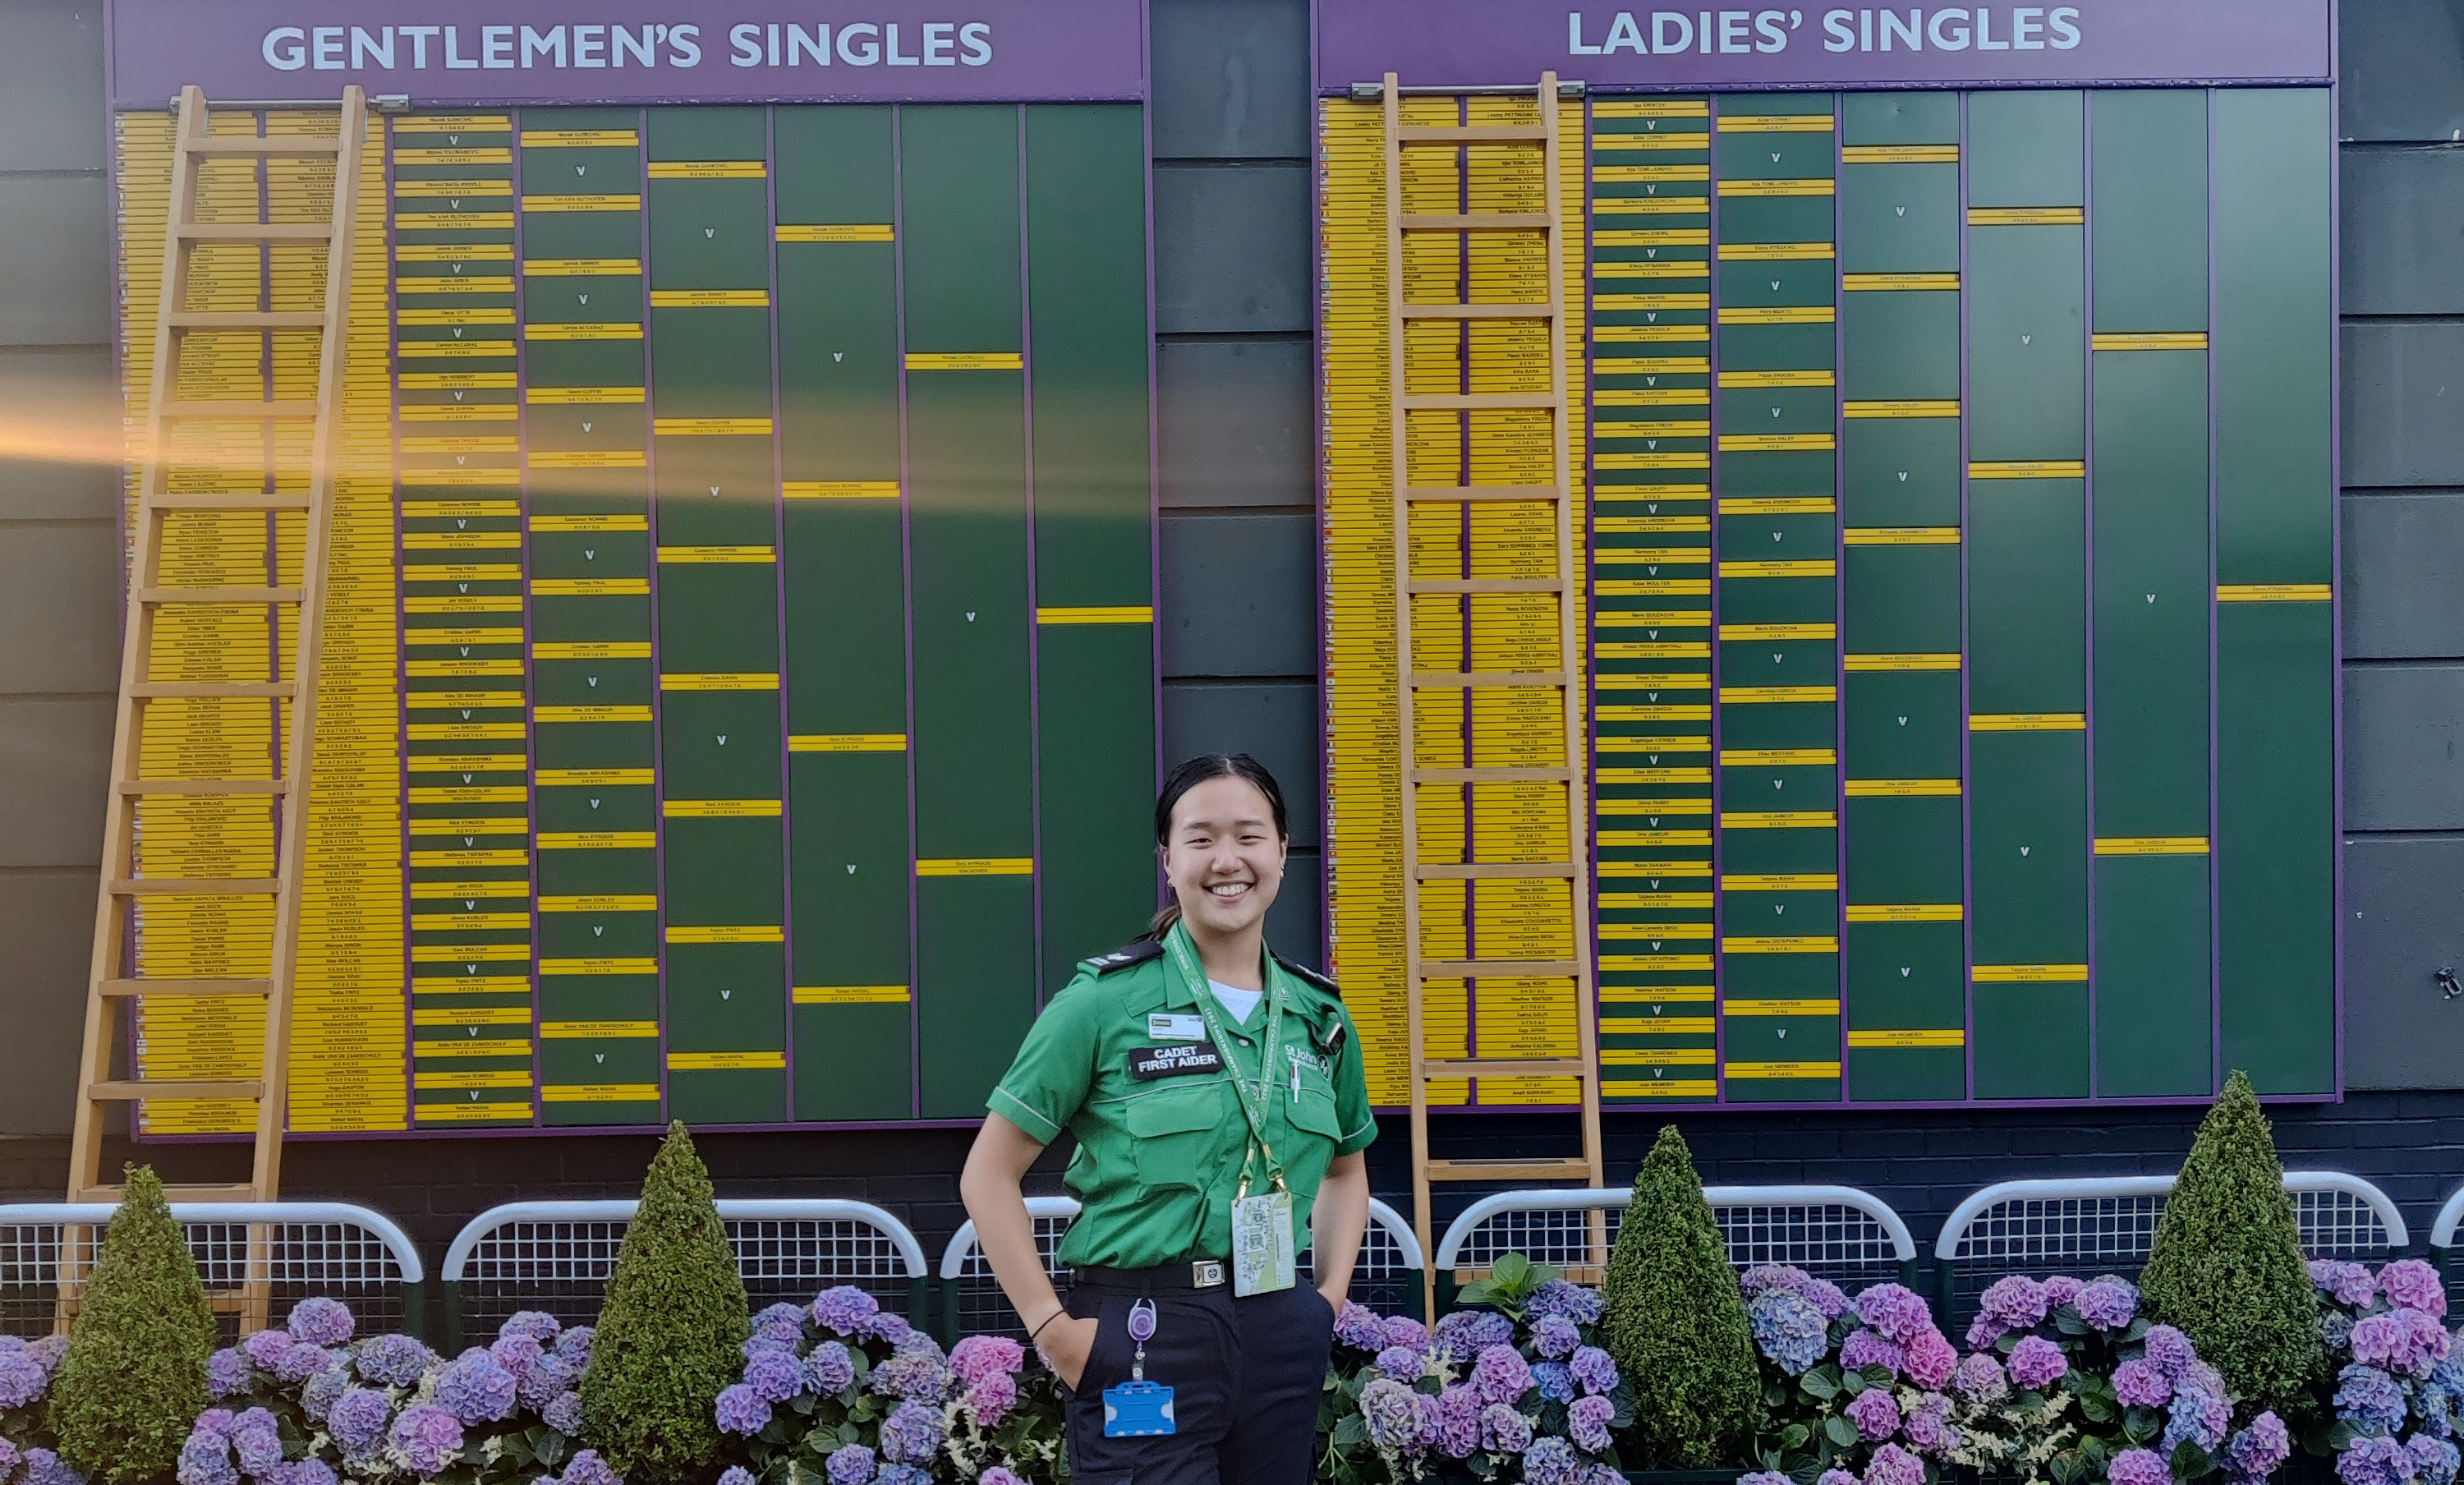 Shimin Hoang Wimbledon 2022 Player Board.jpg